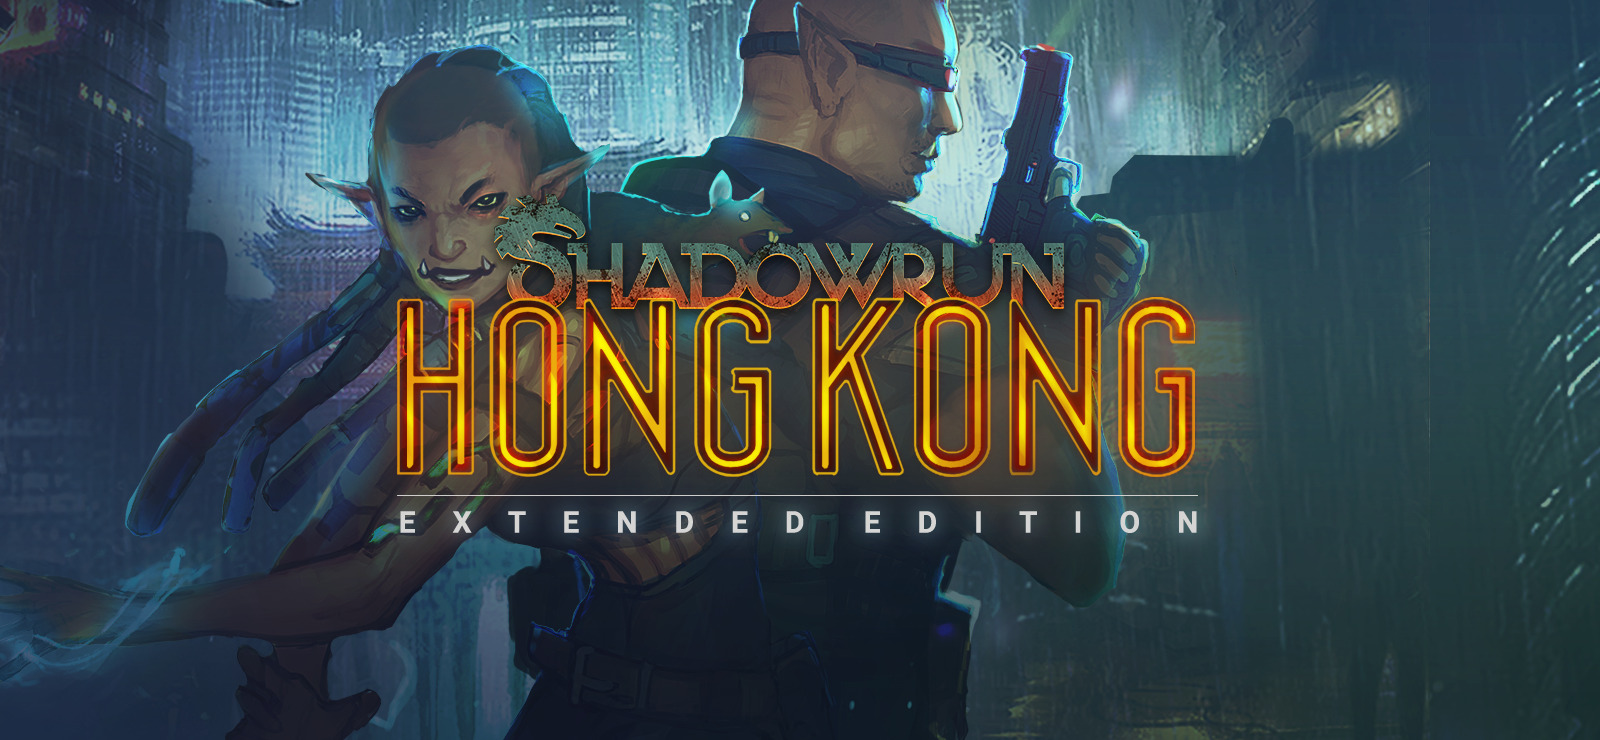 shadowrun-hong-kong-extended-edition-free-download-v3-1-2-gog-unlocked